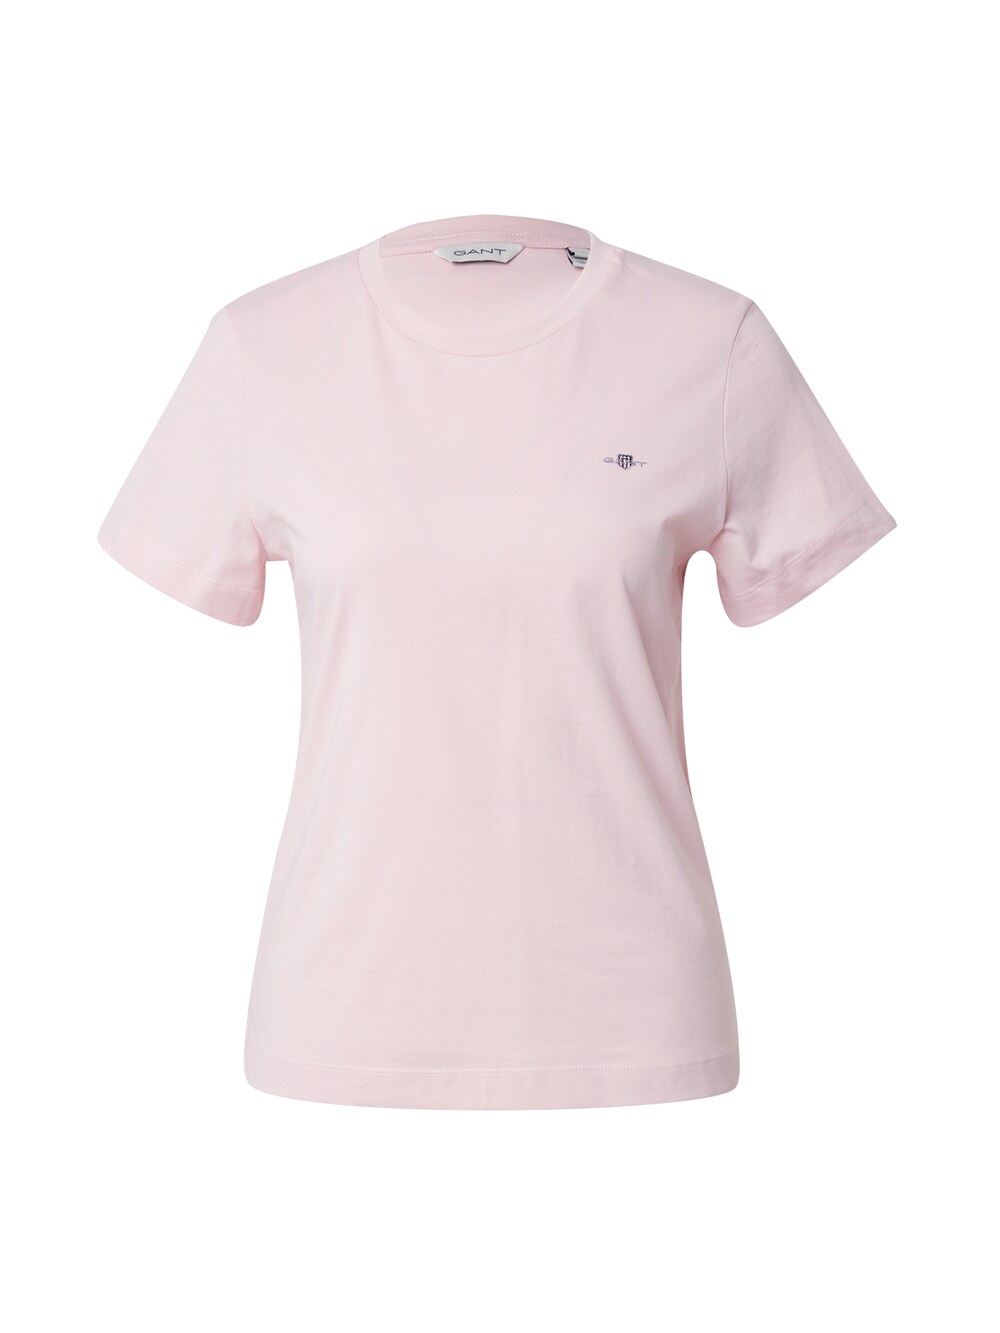 Рубашка Gant, розовый рубашка gant размер s розовый